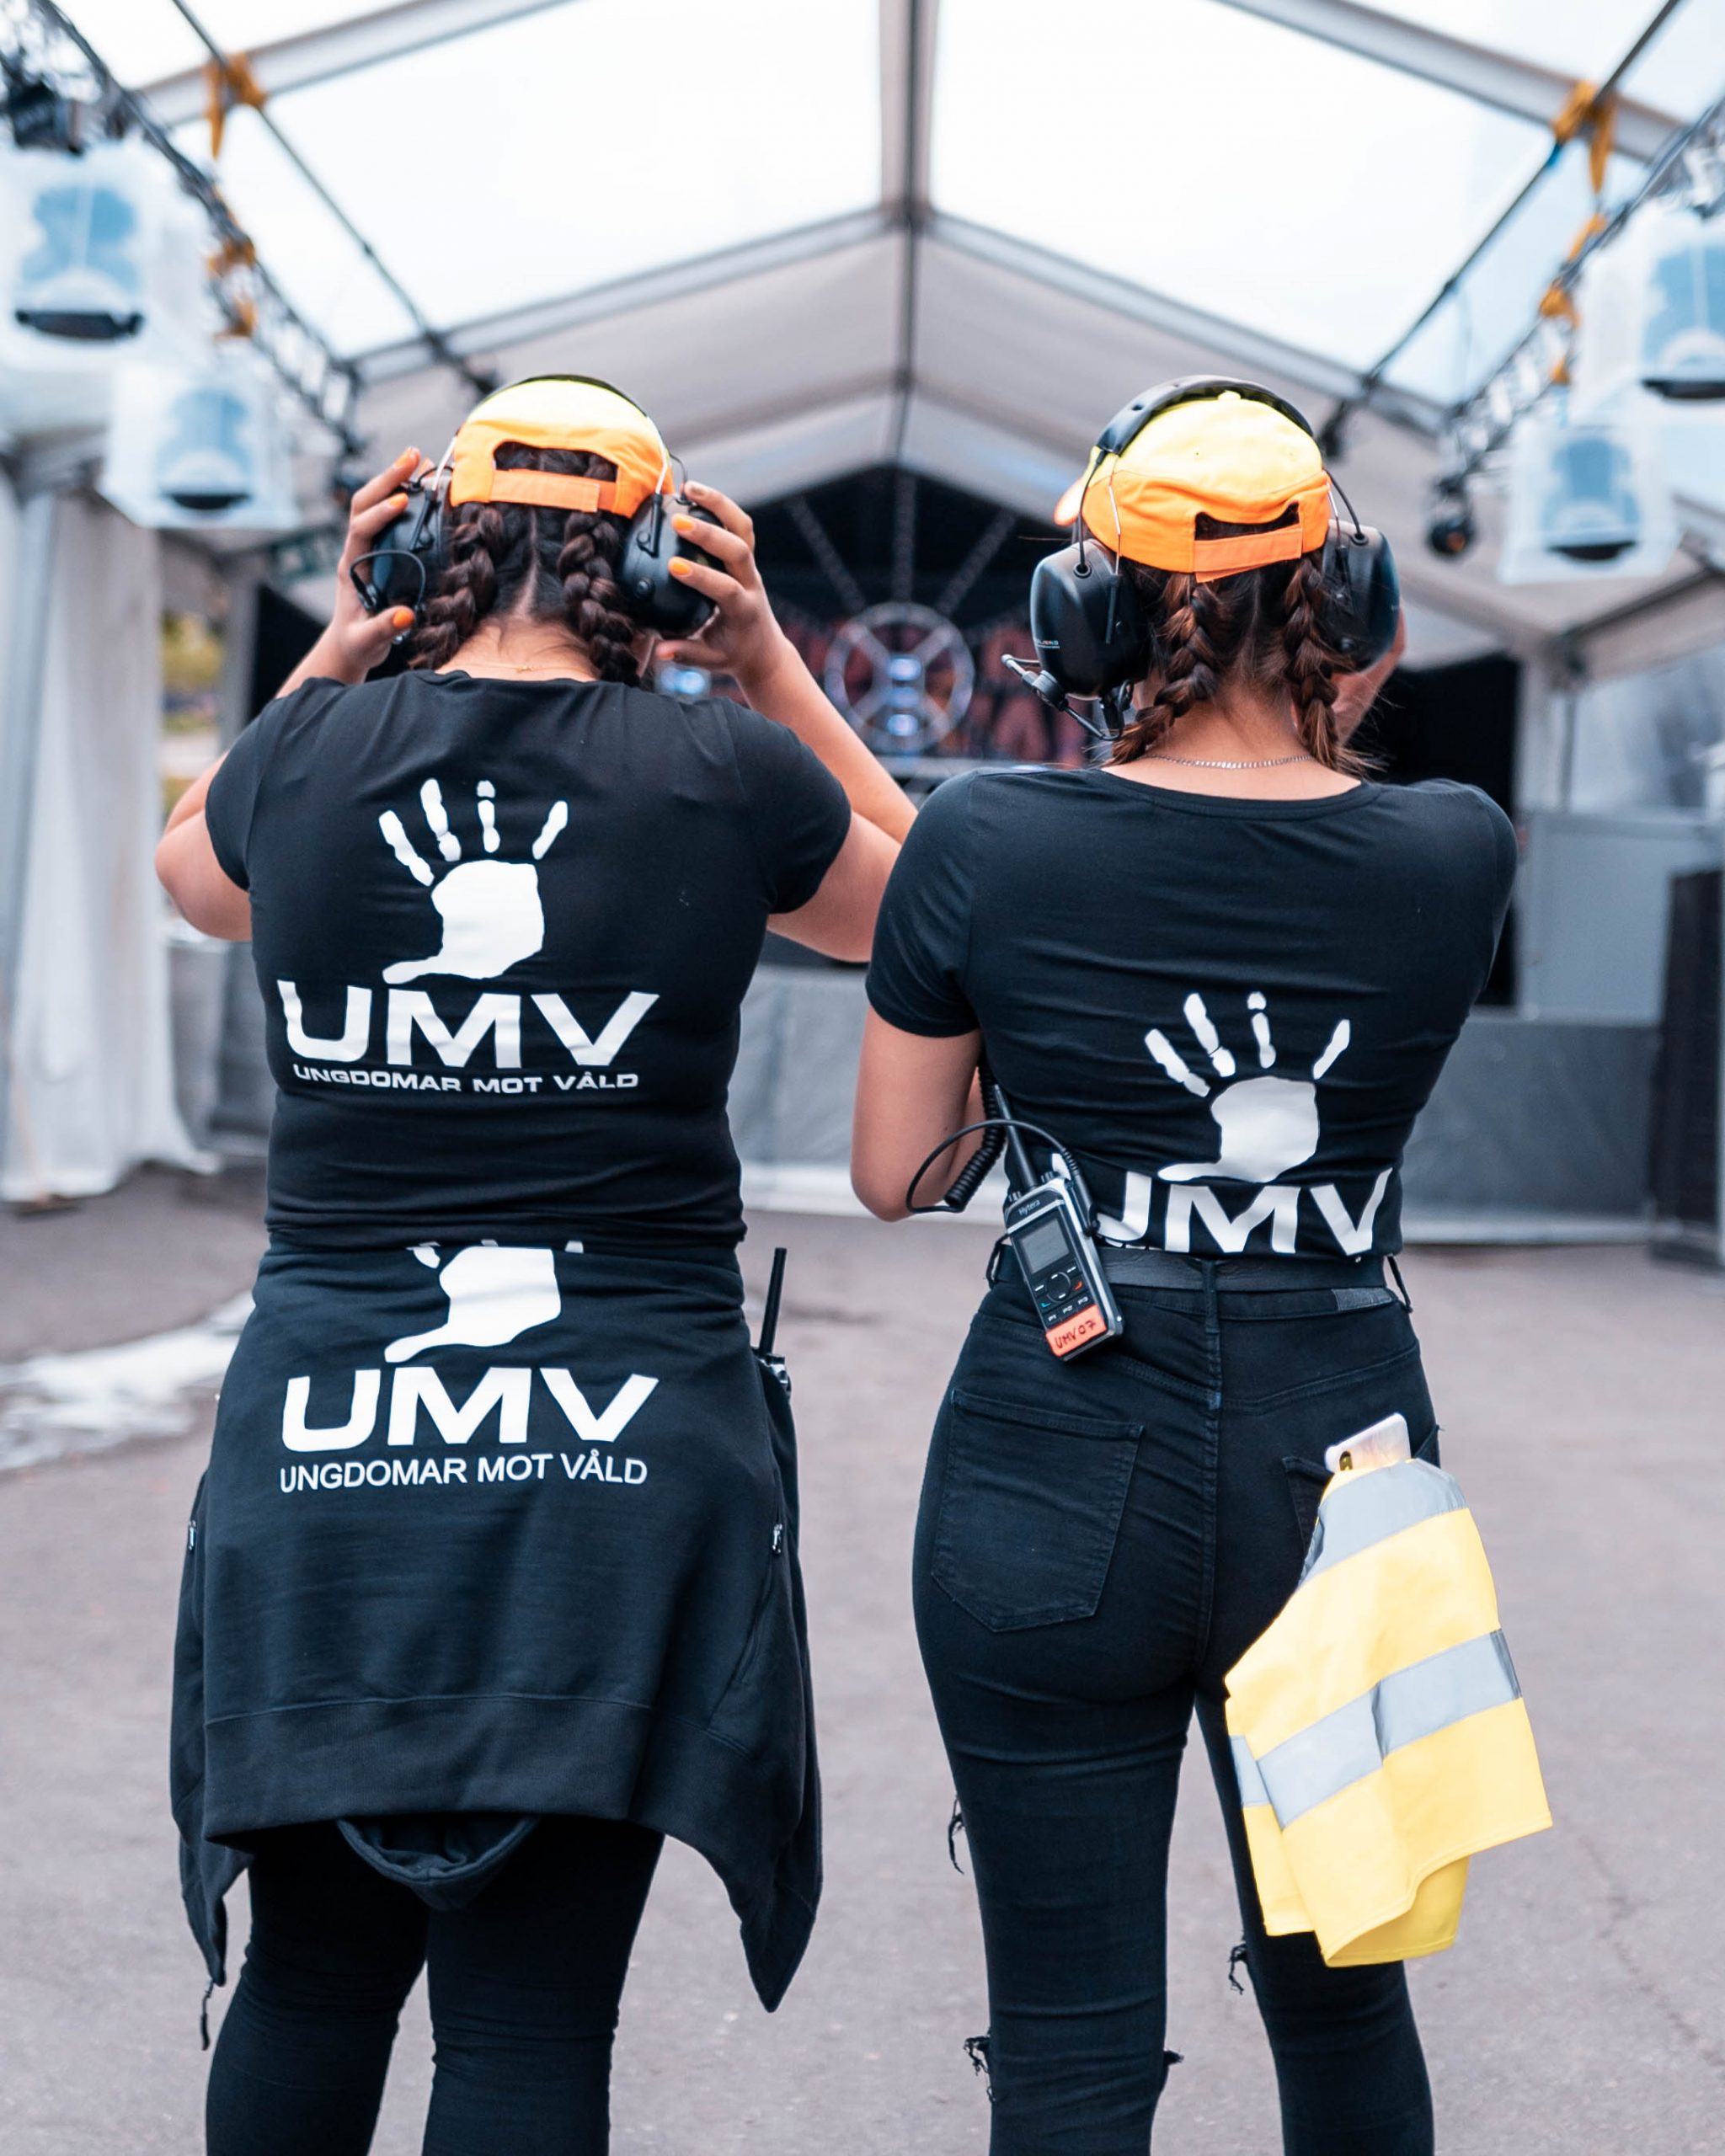 UMV – Ungdomar Mot Våld